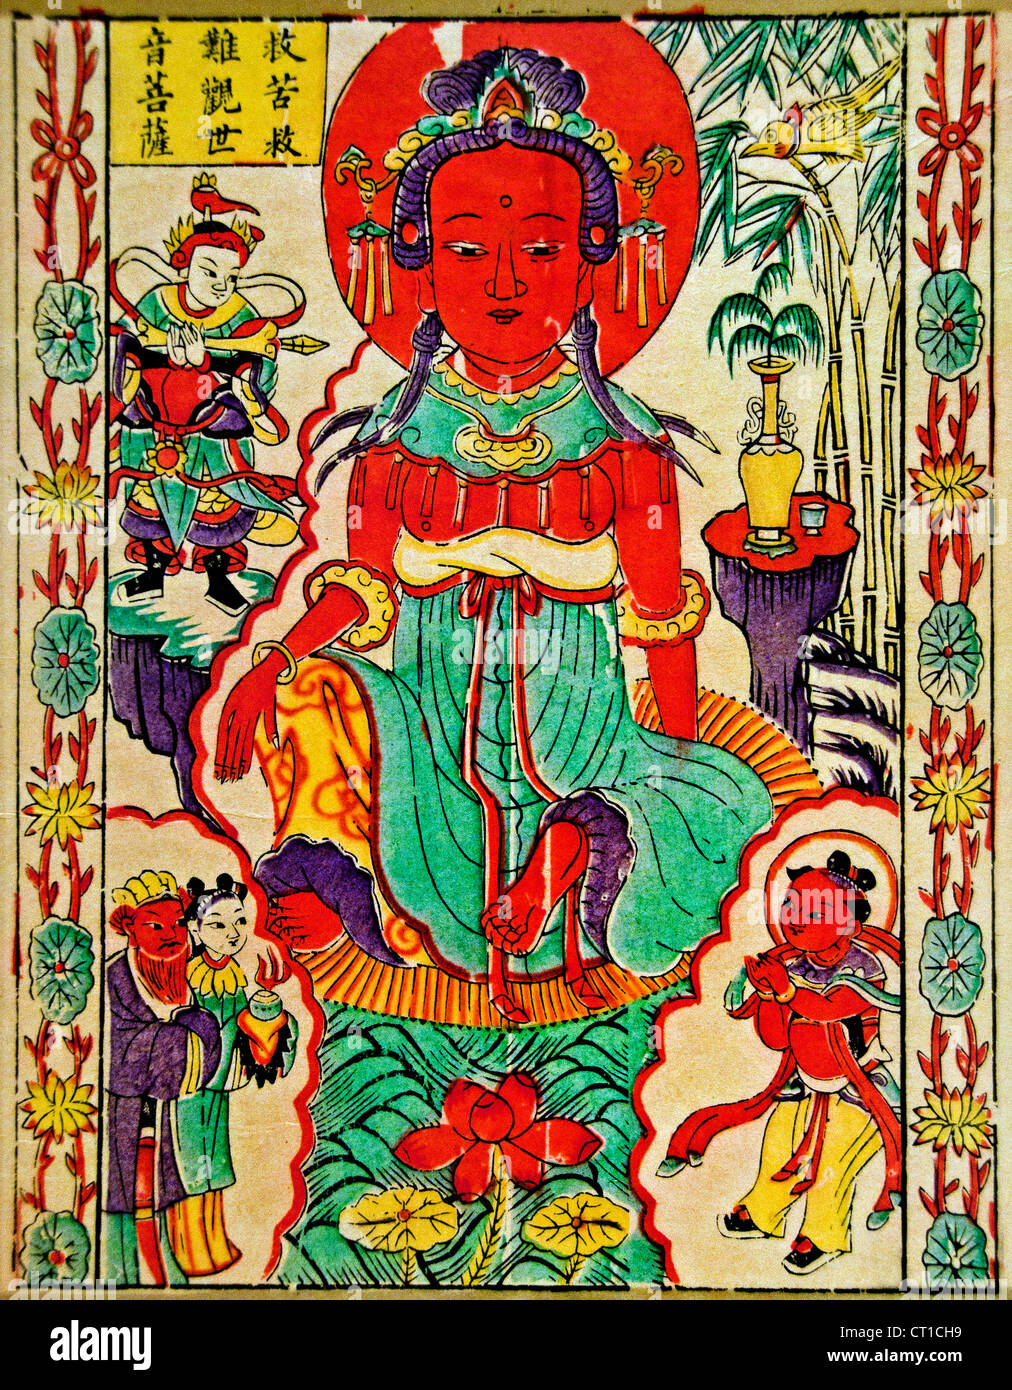 Le bodhisattva de la Compassion Guanyin Qing au début du 20e siècle gravure sur bois couleur sur papier Chine chinois Banque D'Images